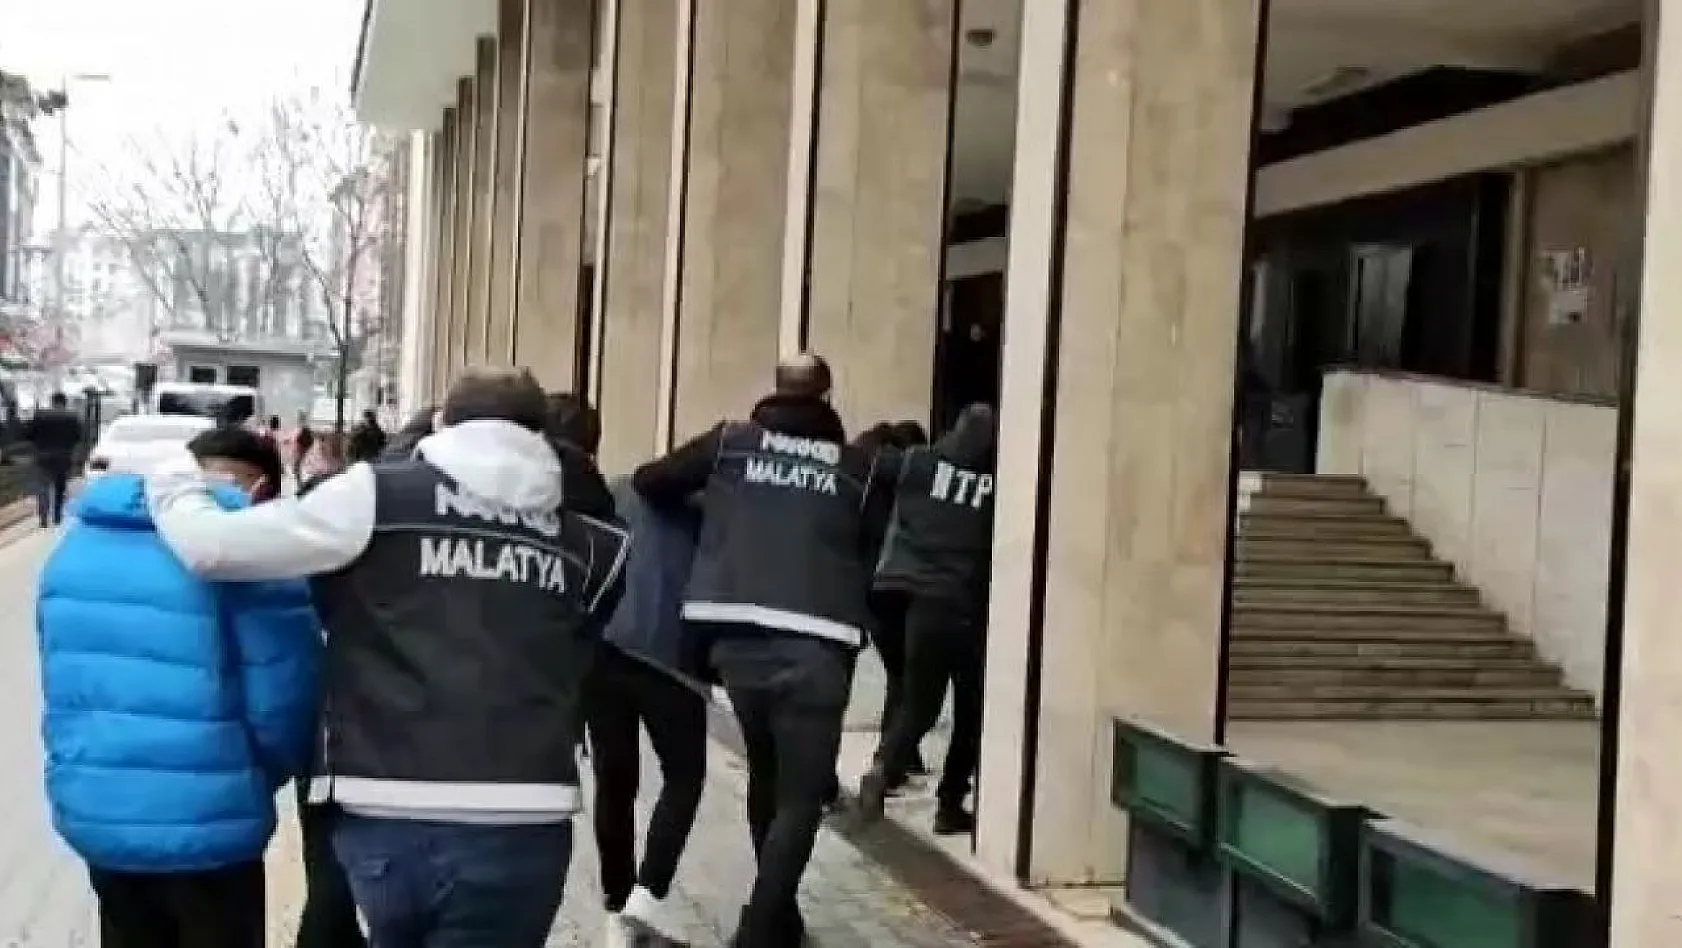 Malatya'da zehir tacirlerine büyük darbe: 16 tutuklama